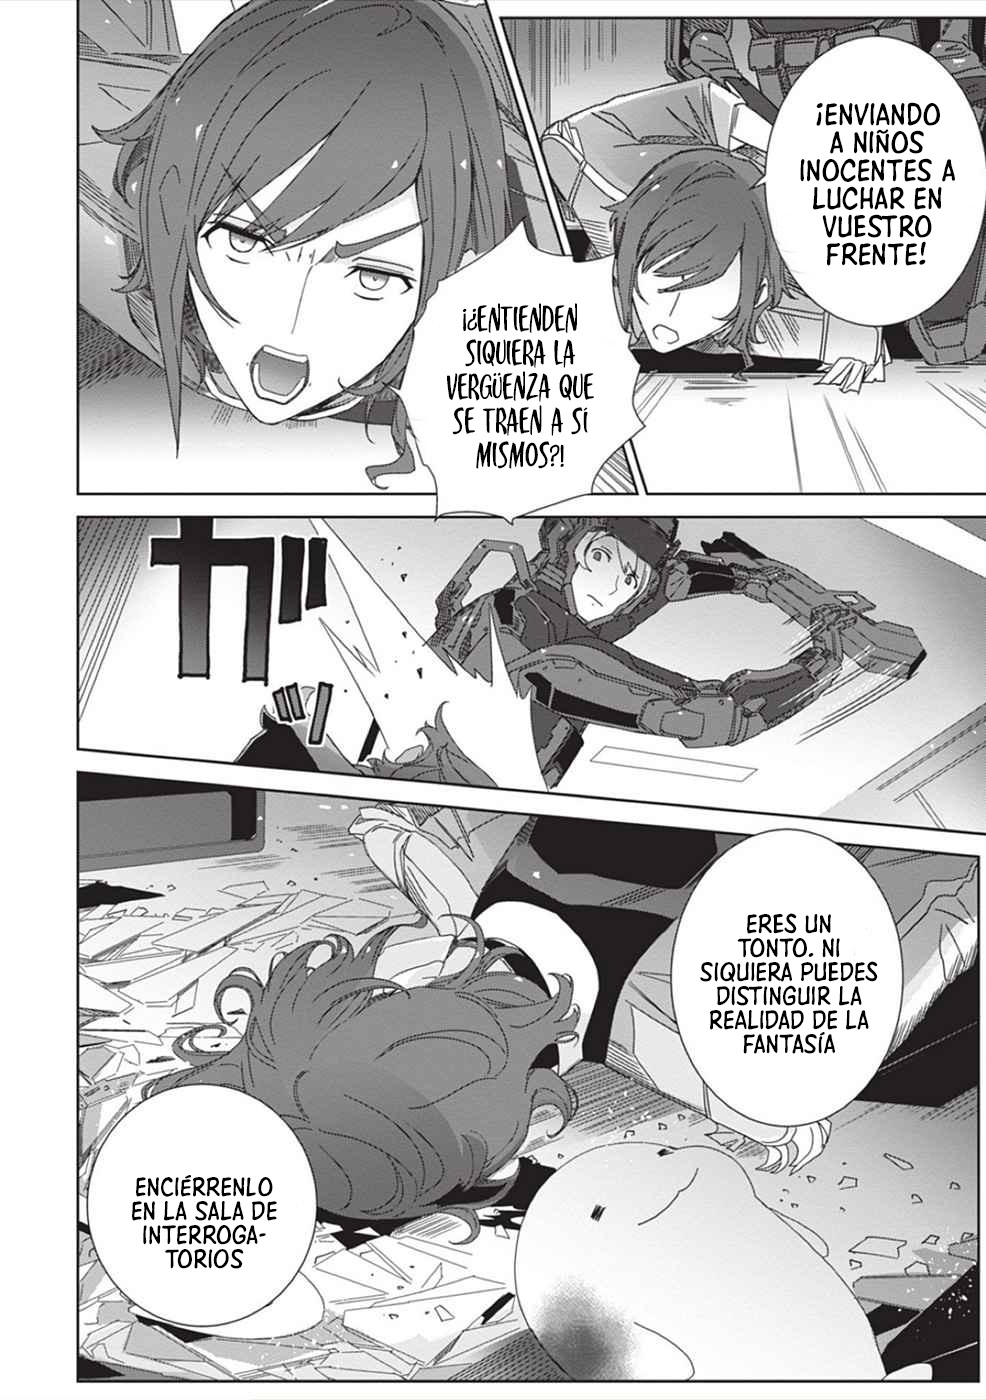 Manga EIRUN LAST CODE Chapter 3 image number 5